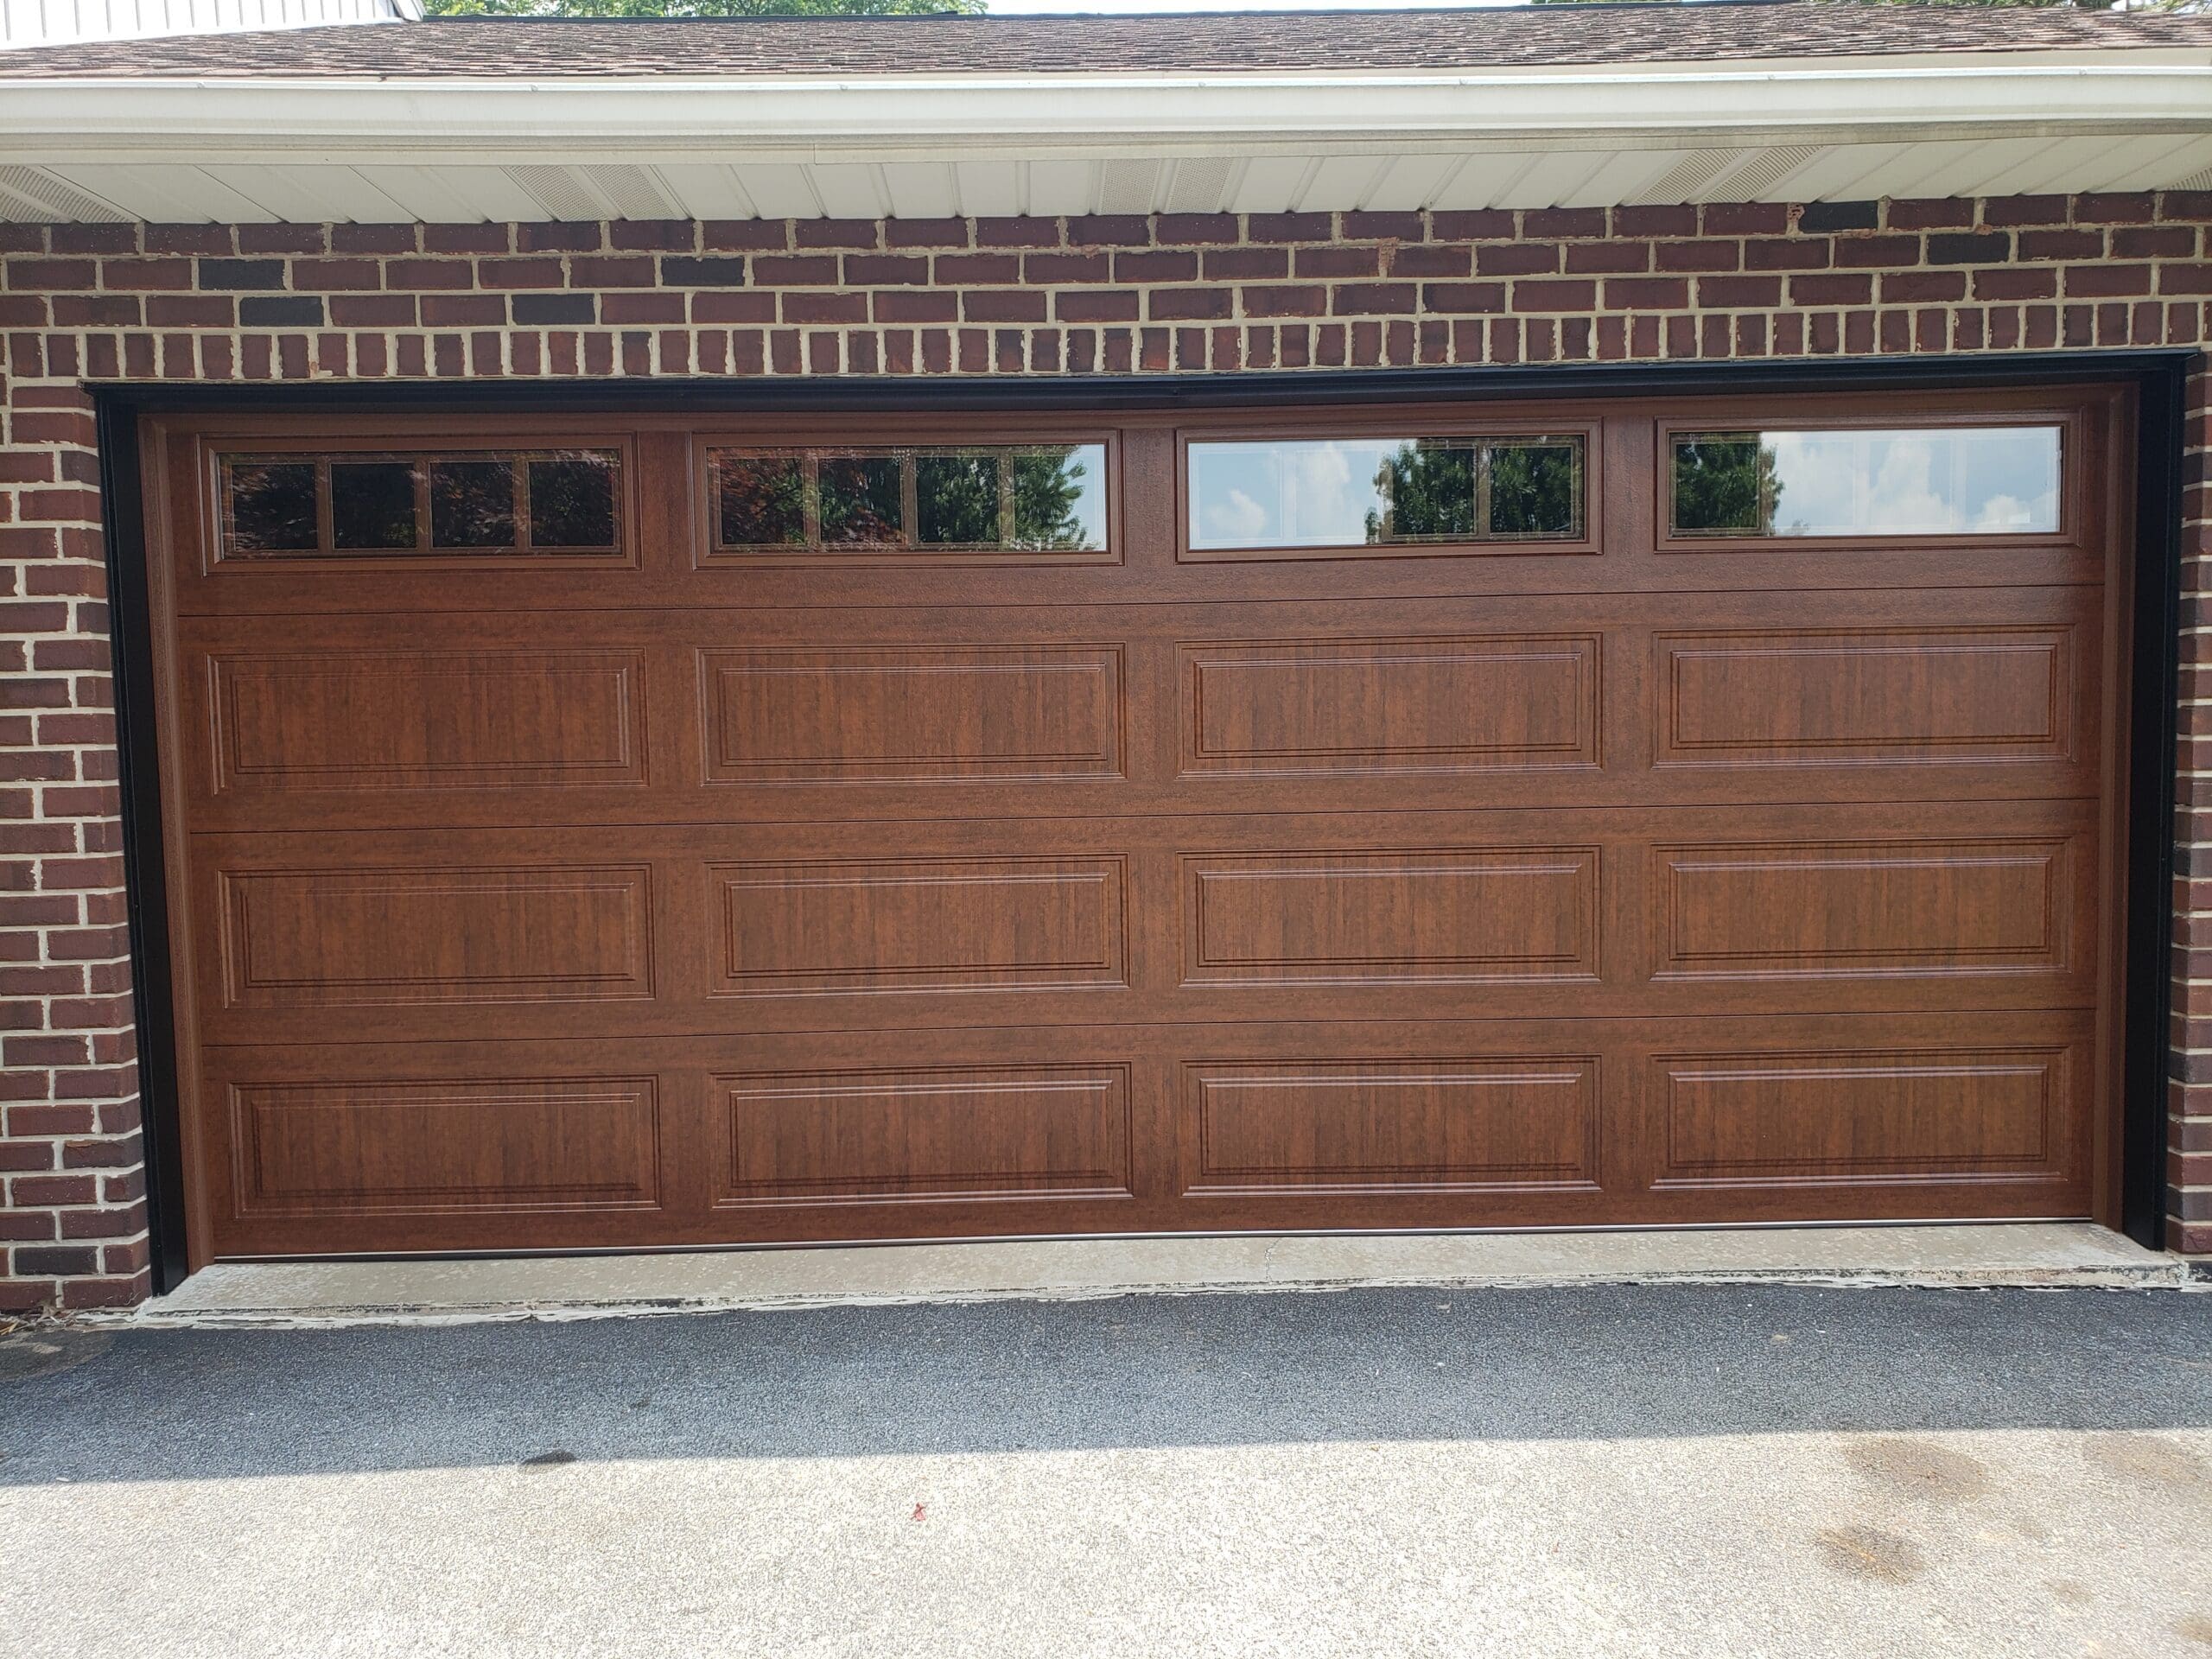 brand new garage door after instillation